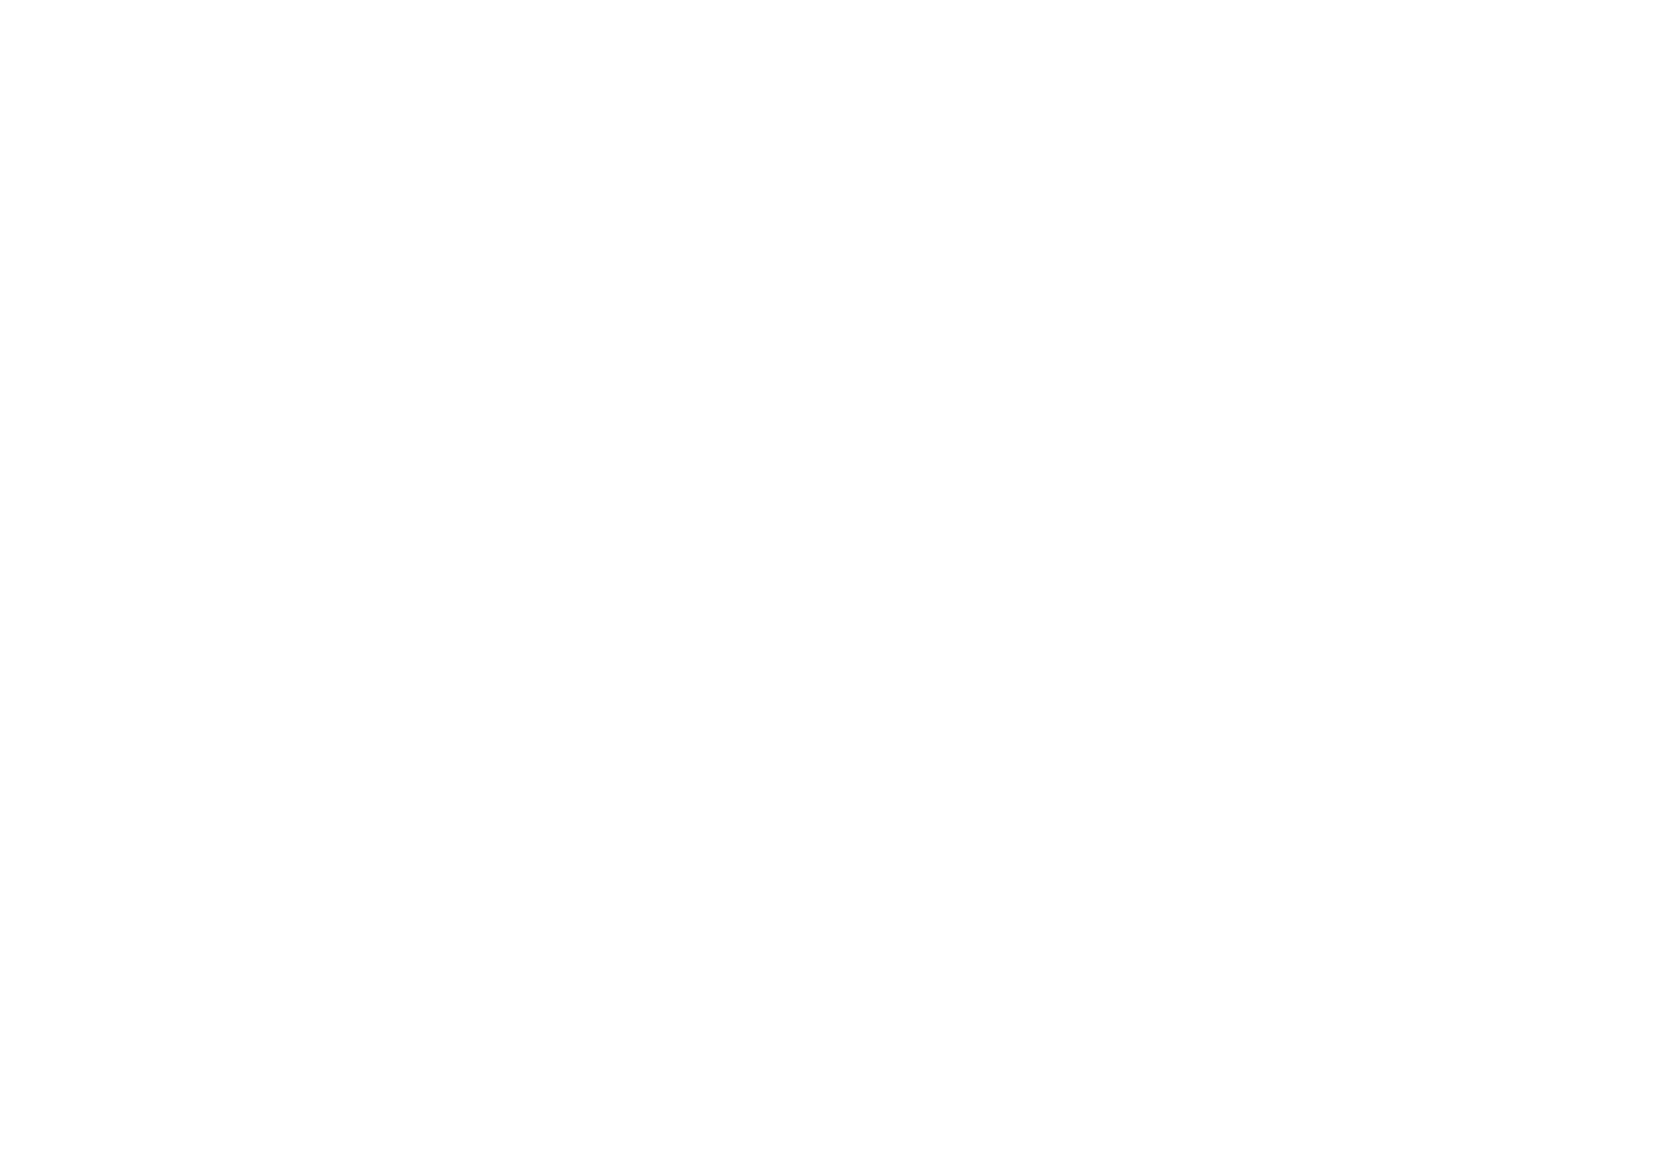 Варианты использования логотипа - Брендбук сети медицинских клиник "Целитель"